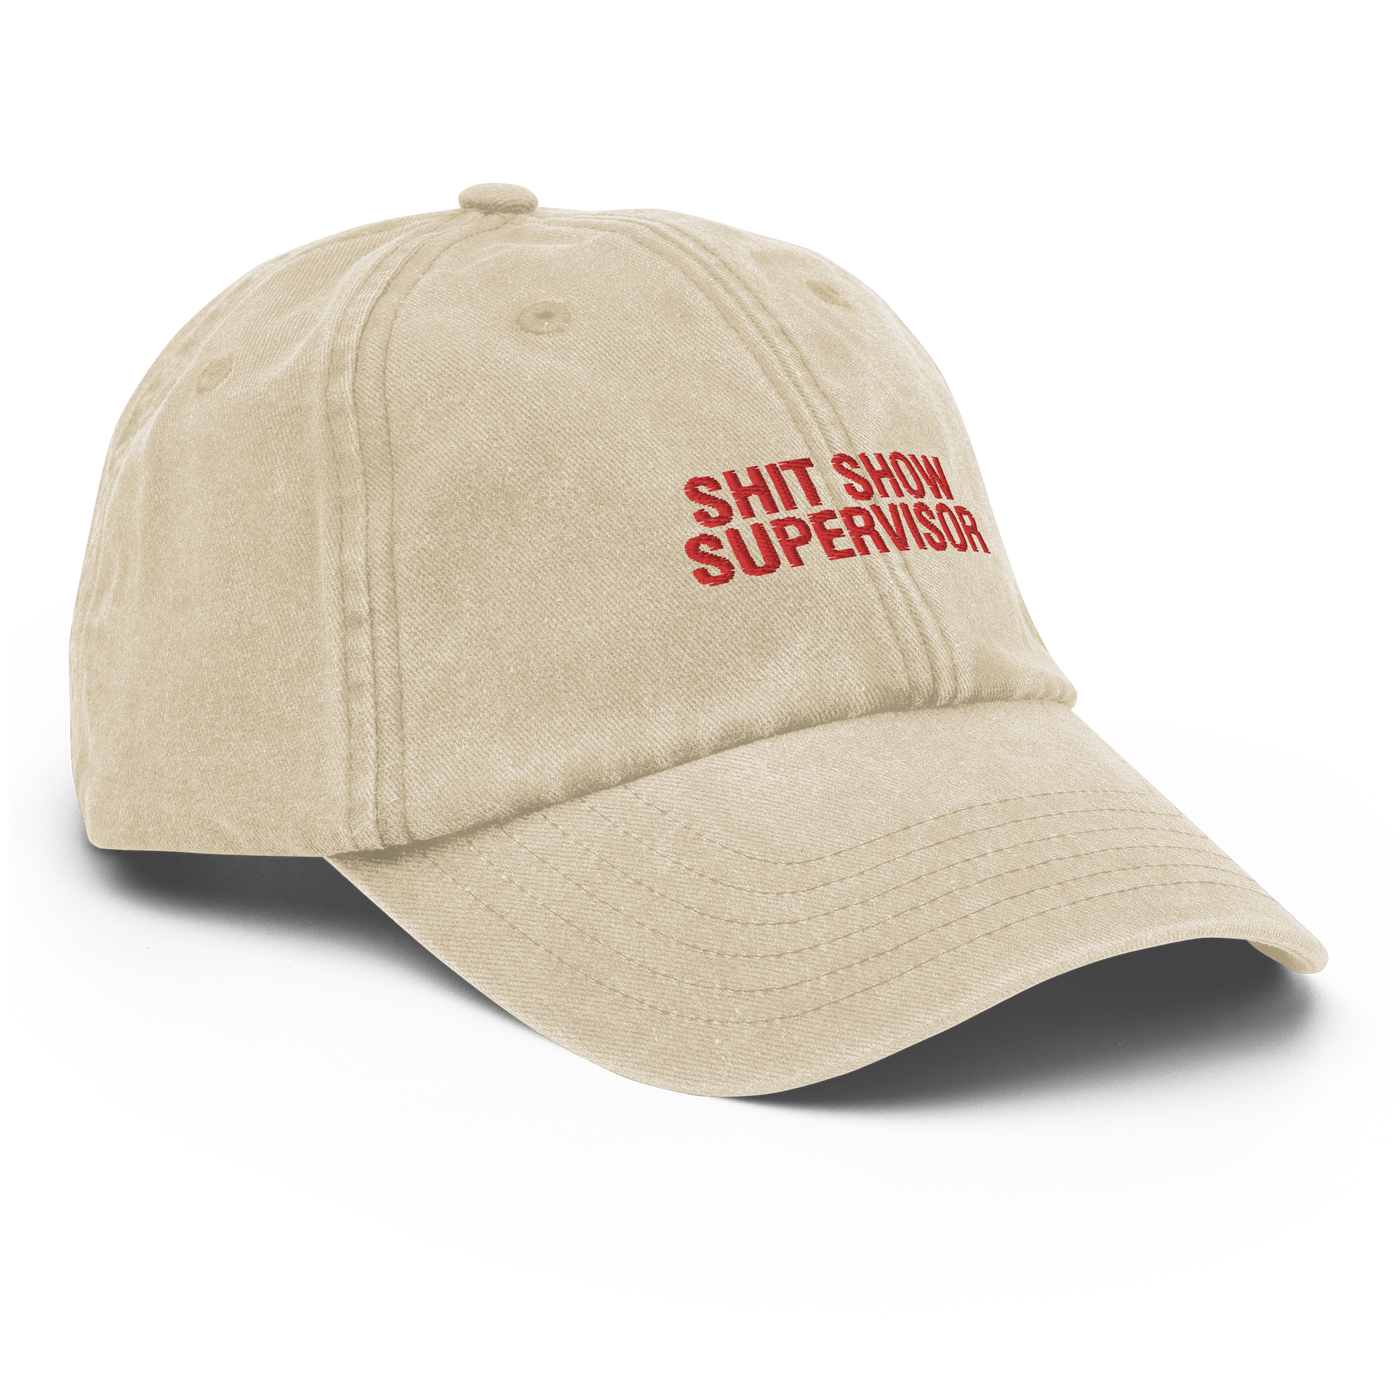 Shit Show Supervisor Vintage Hat